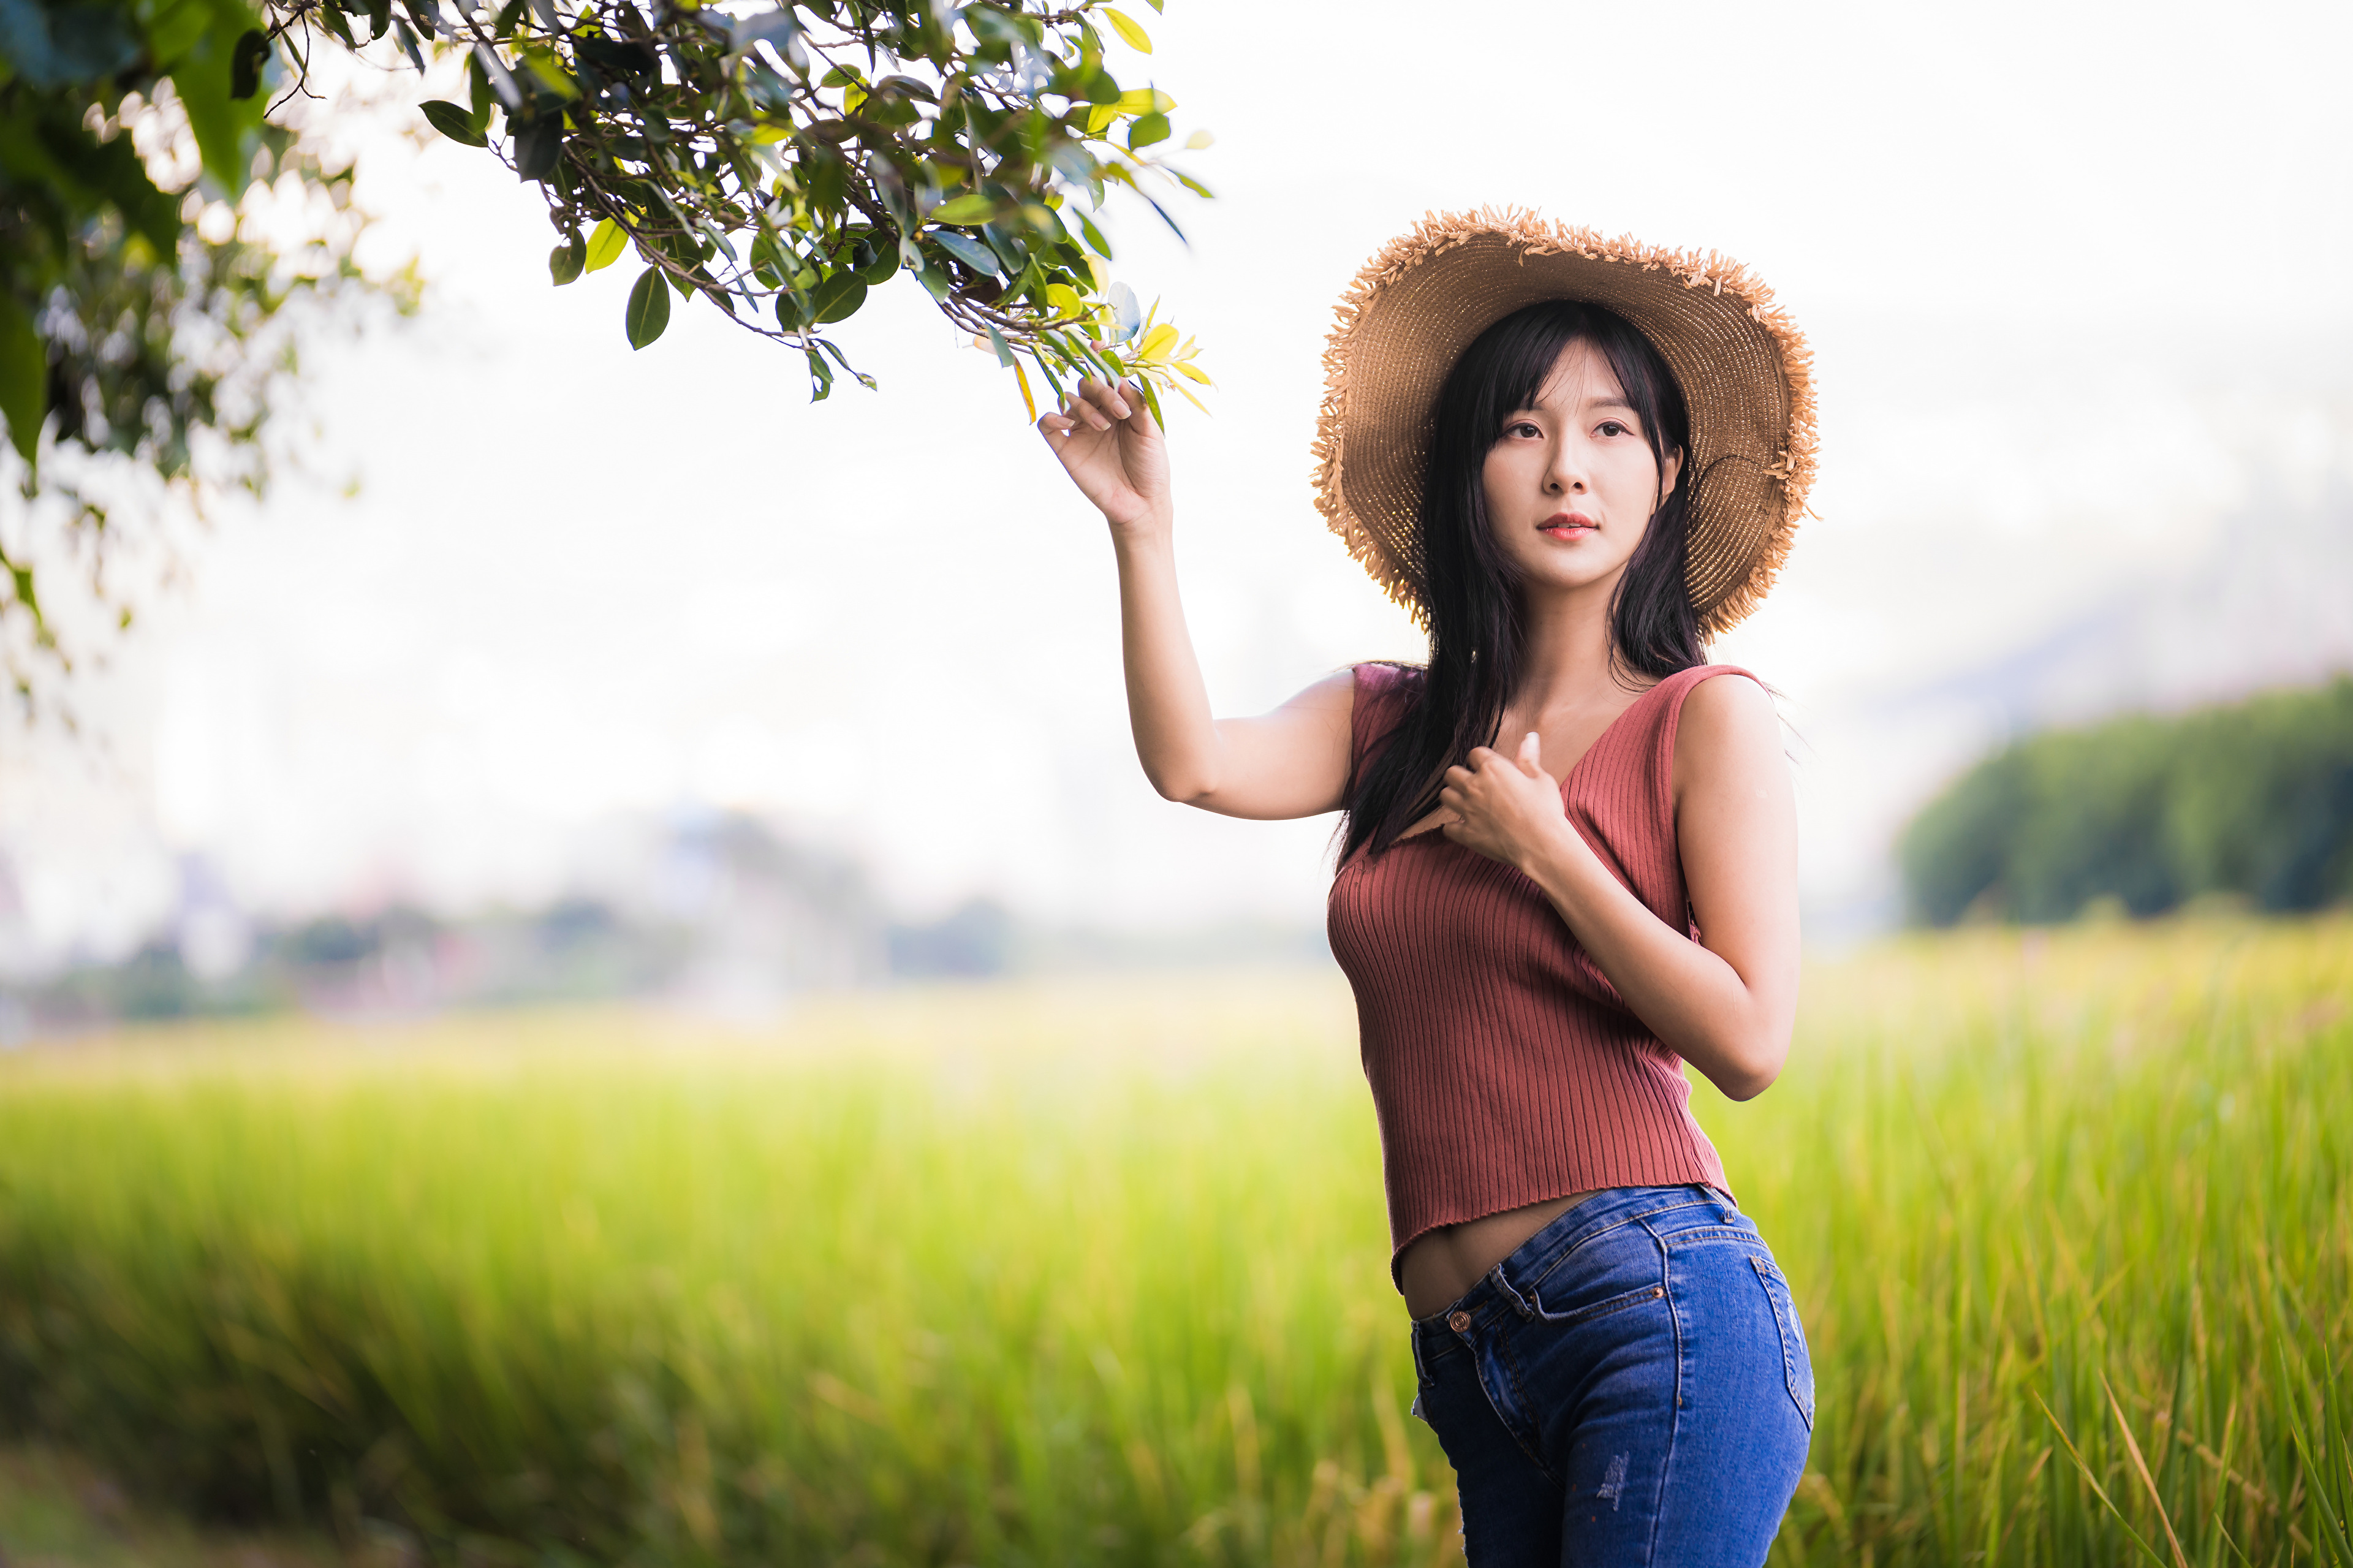 Asian Model Women Long Hair Brunette Straw Hat Shirt Jeans Field Trees Branch Leaves Depth Of Field  3840x2559